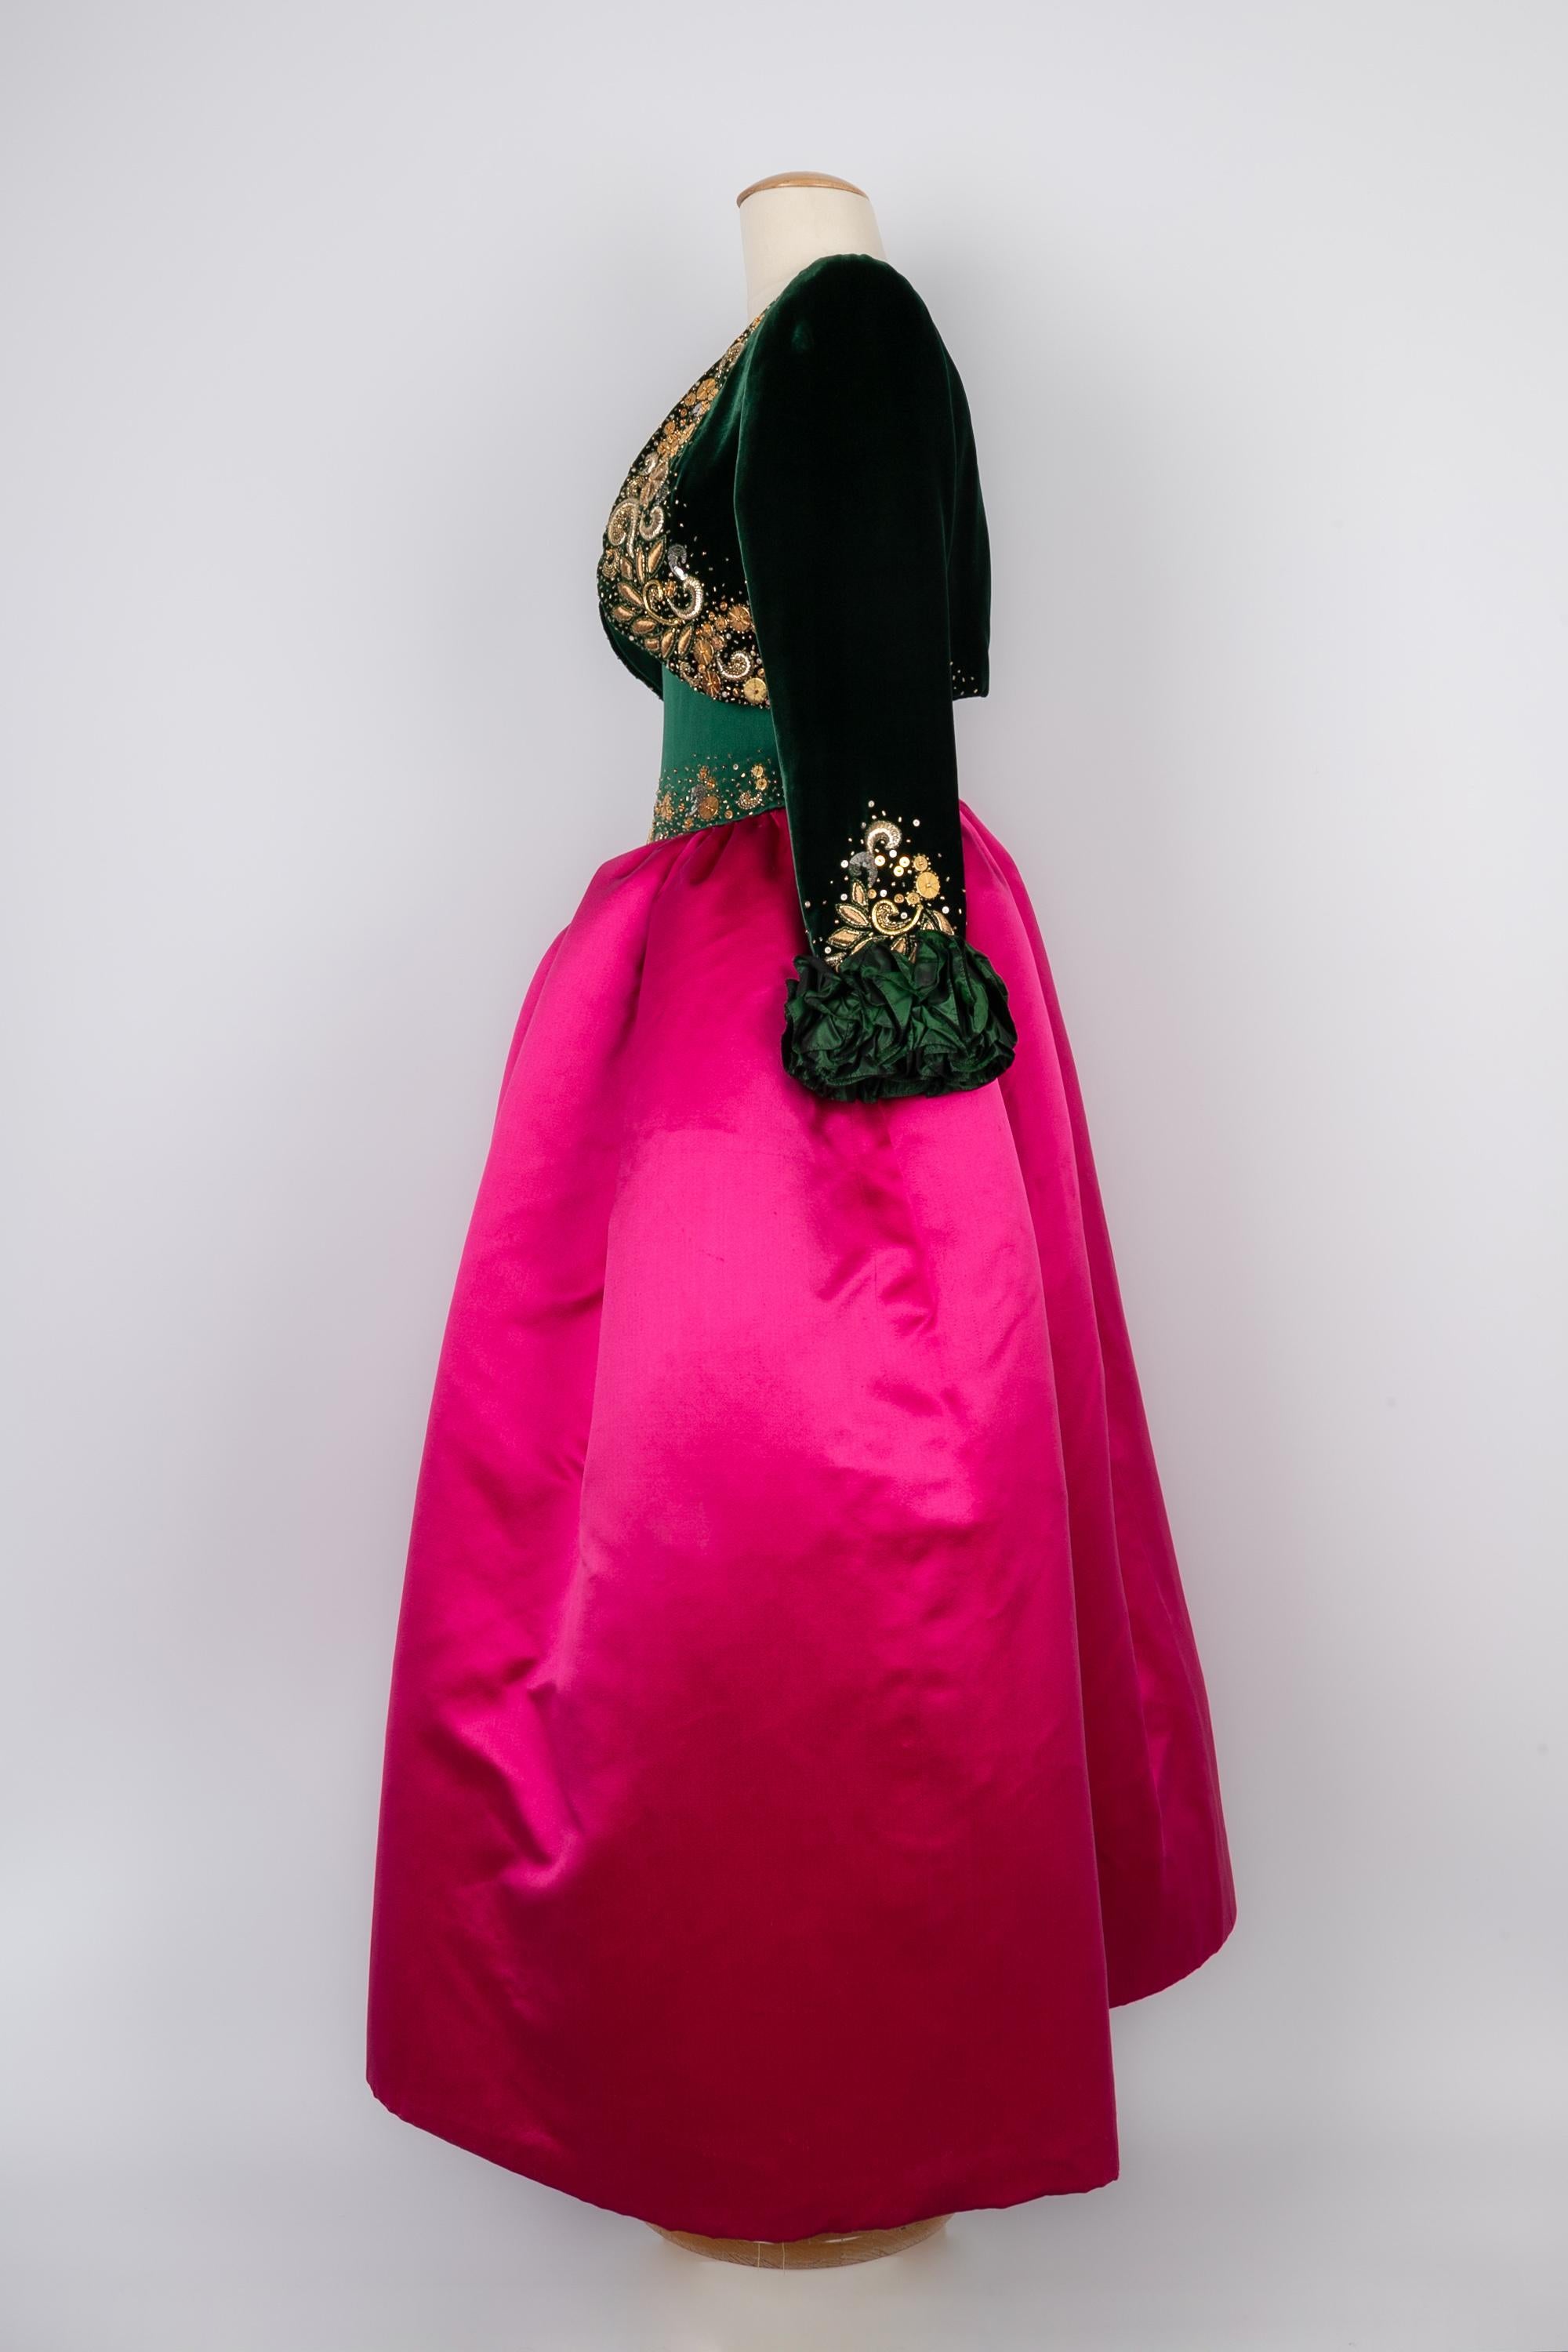 NINA RICCI - (Made in France) Set bestehend aus einem Kleid und einem Bolero. Das Bustierkleid aus grünem Seidensatin ist mit Pailletten und silbernen und goldenen Fäden auf dem Bustier bestickt. Das Futter des Rockteils ist aus Tüll. Der grüne